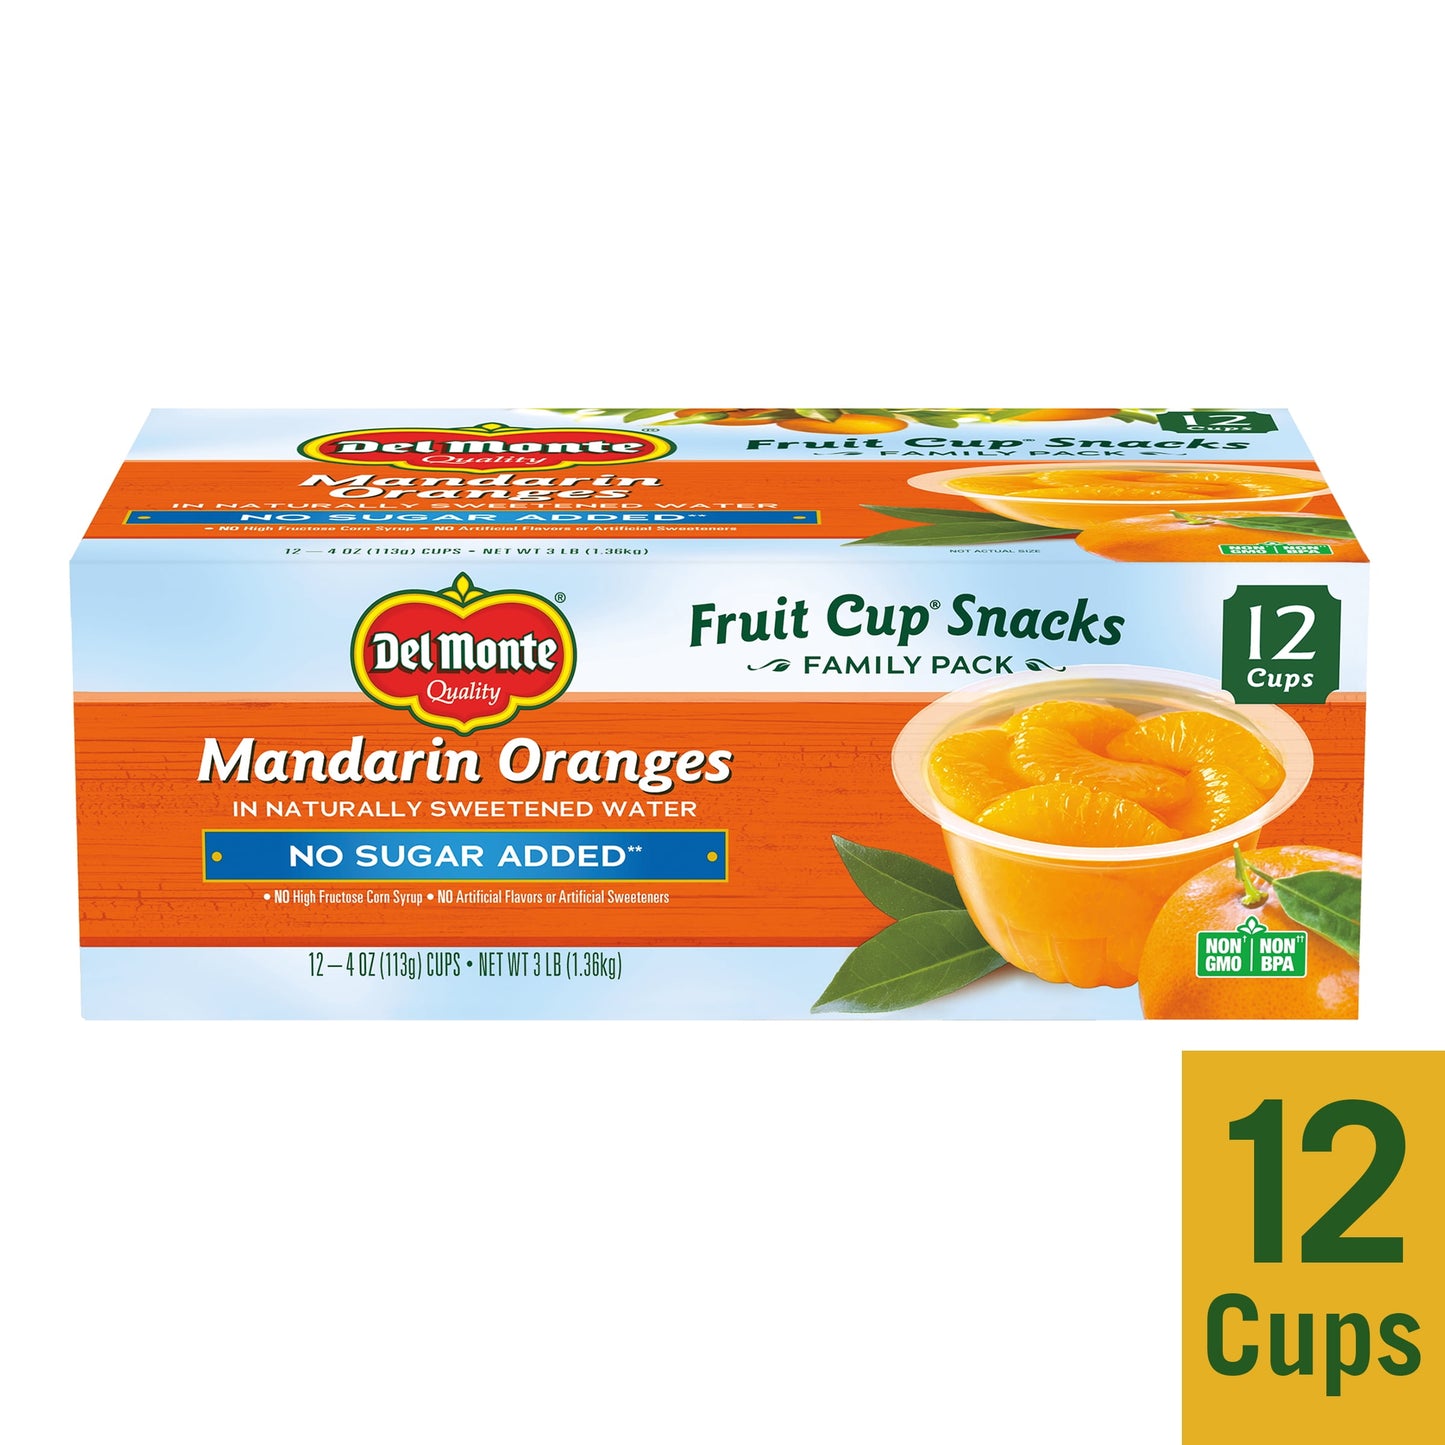 (12 Cups)  Mandarin Oranges Fruit Cups, No Sugar Added, 4 Oz